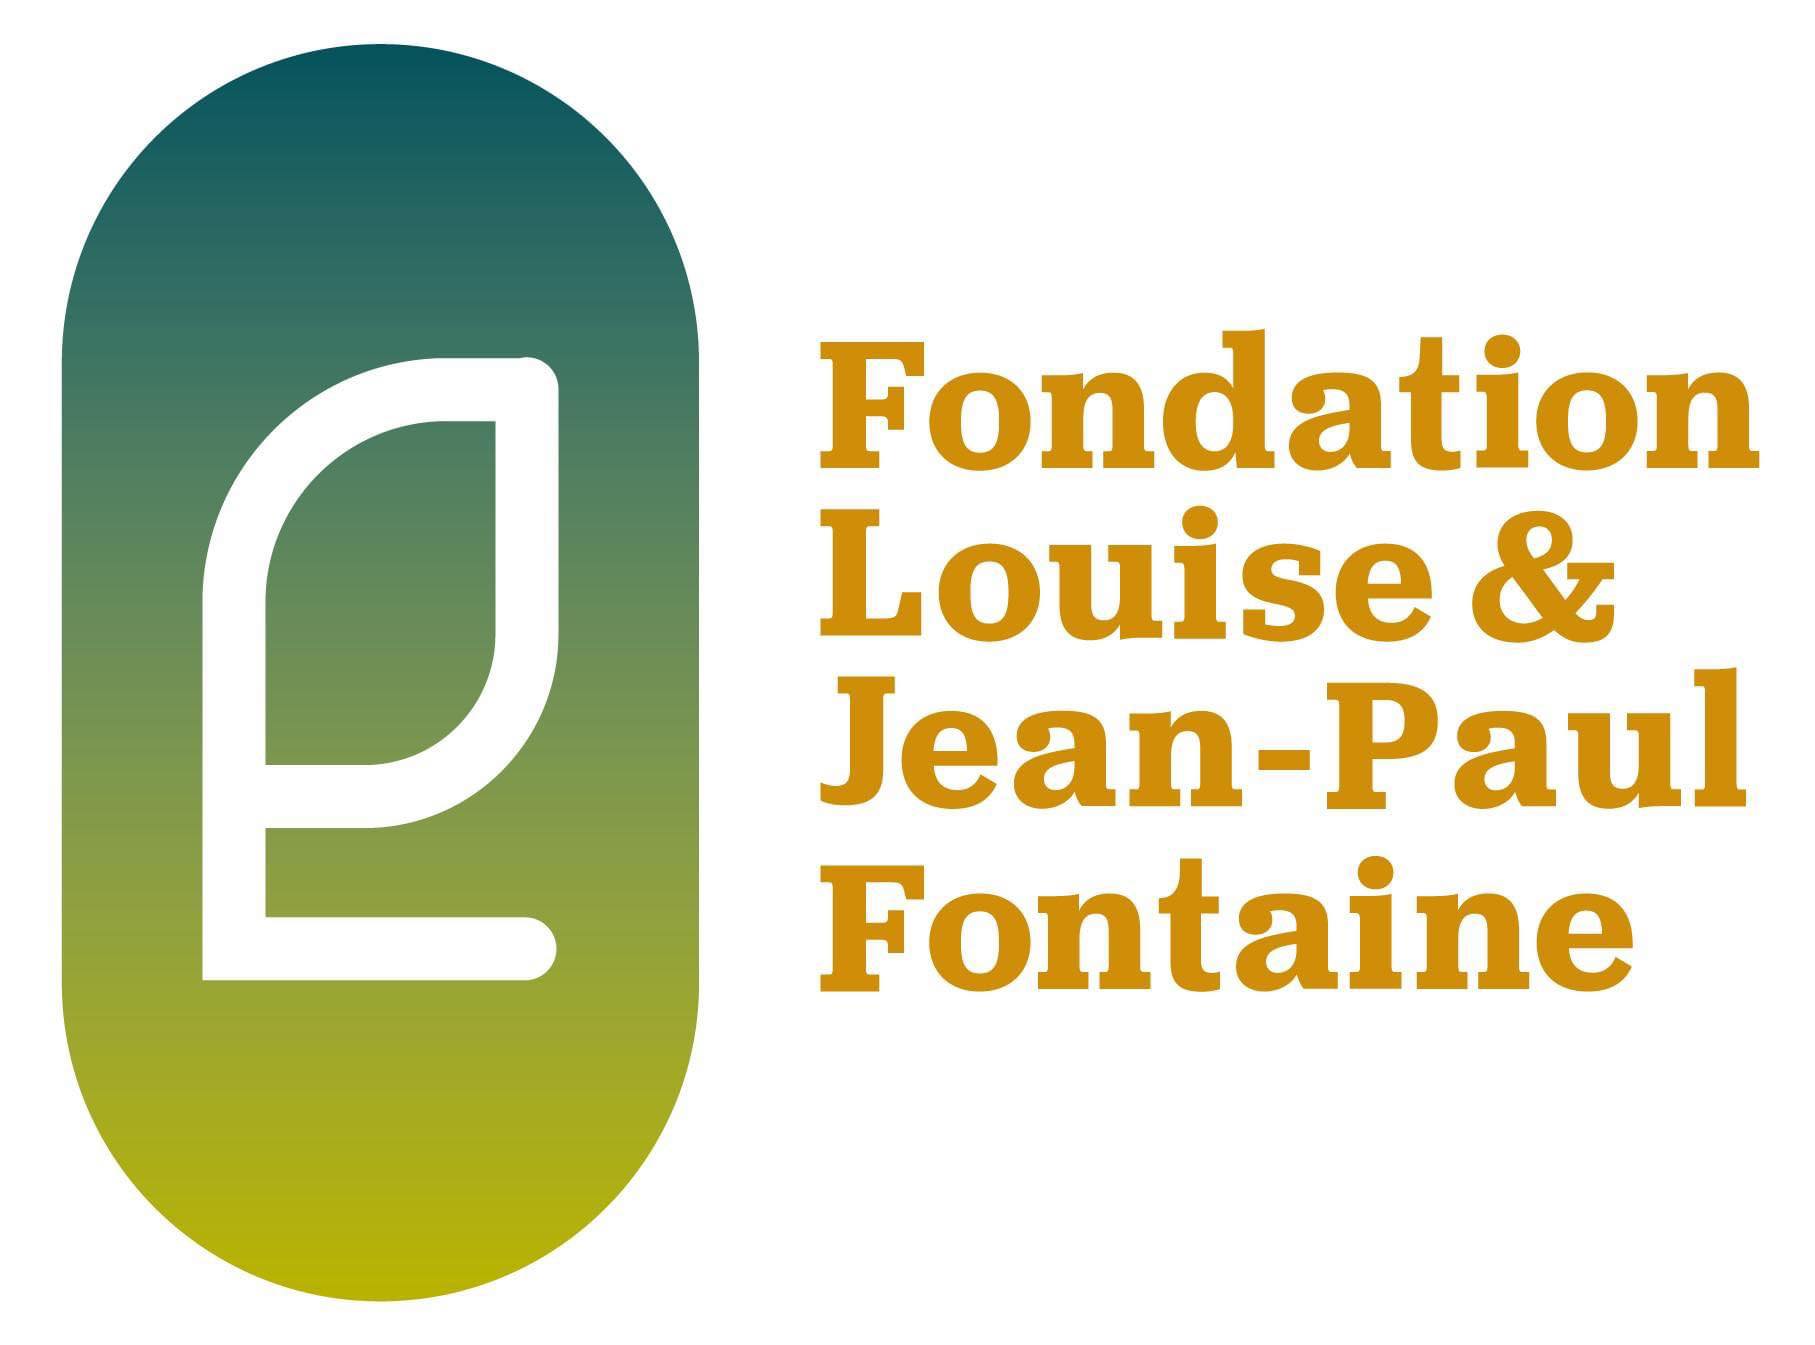 Fondation Louise et Jean-Paul Fontaine